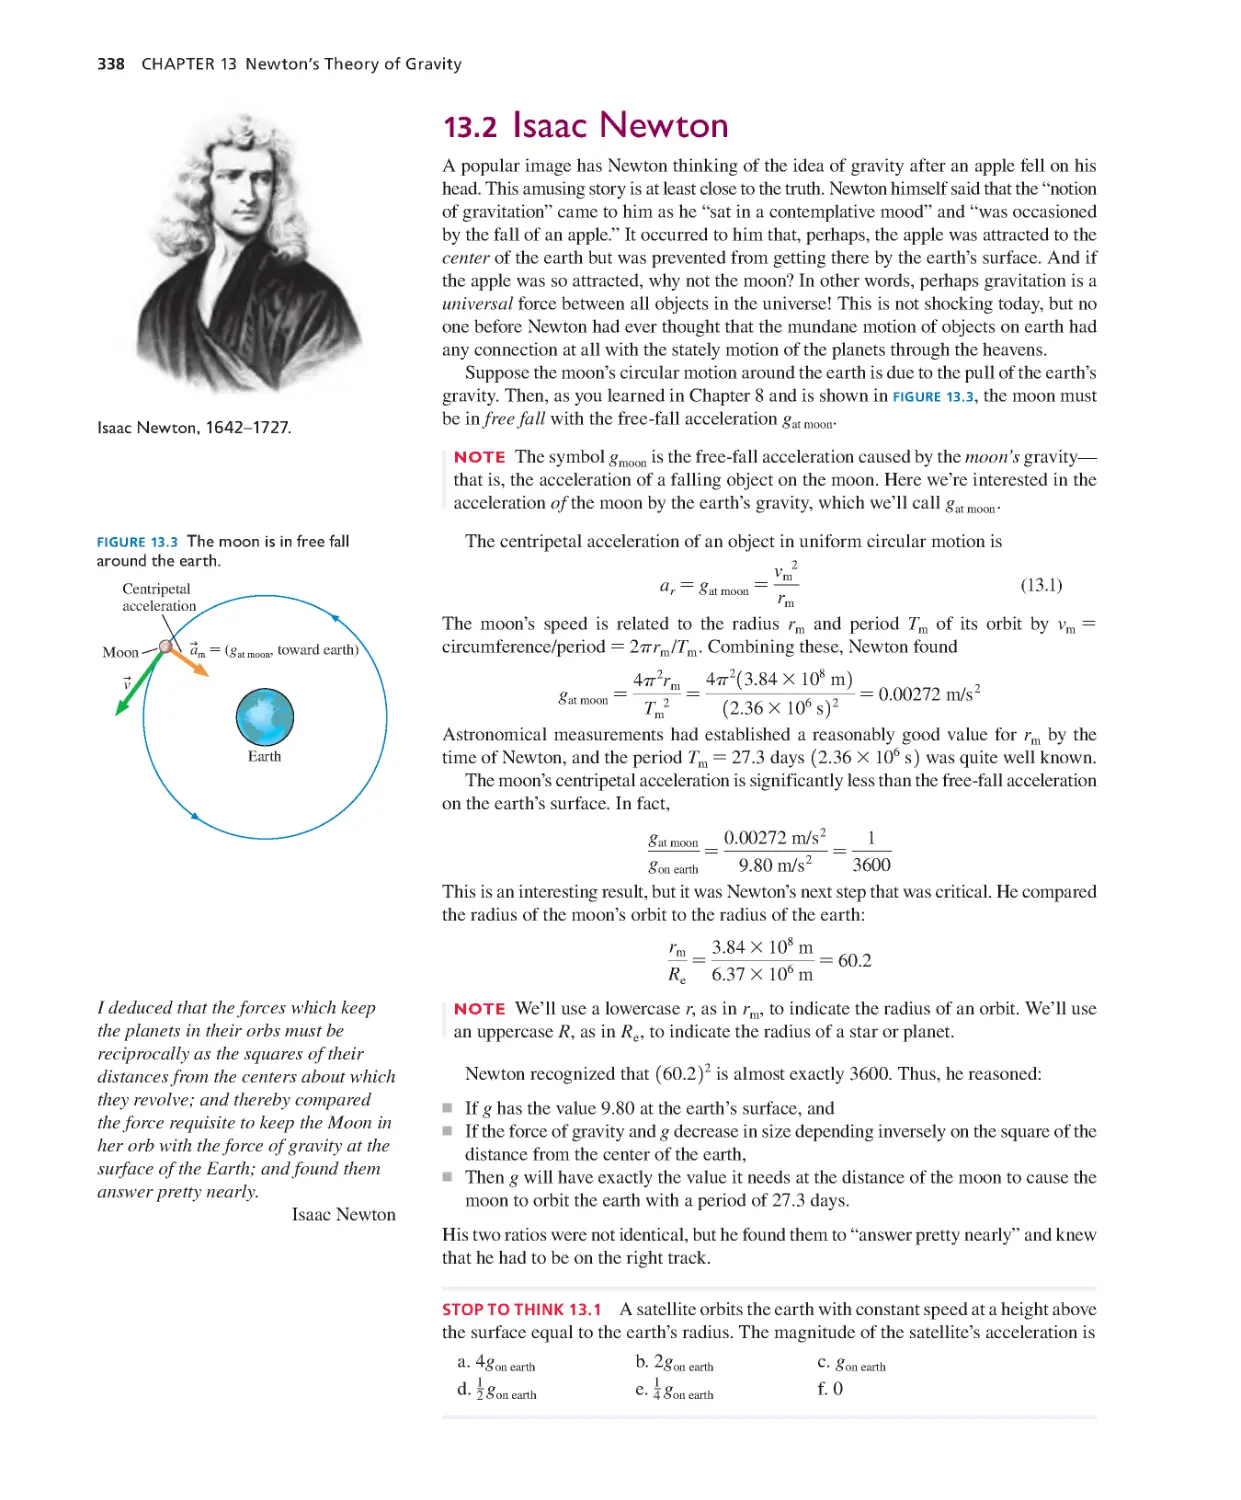 13.2. Isaac Newton